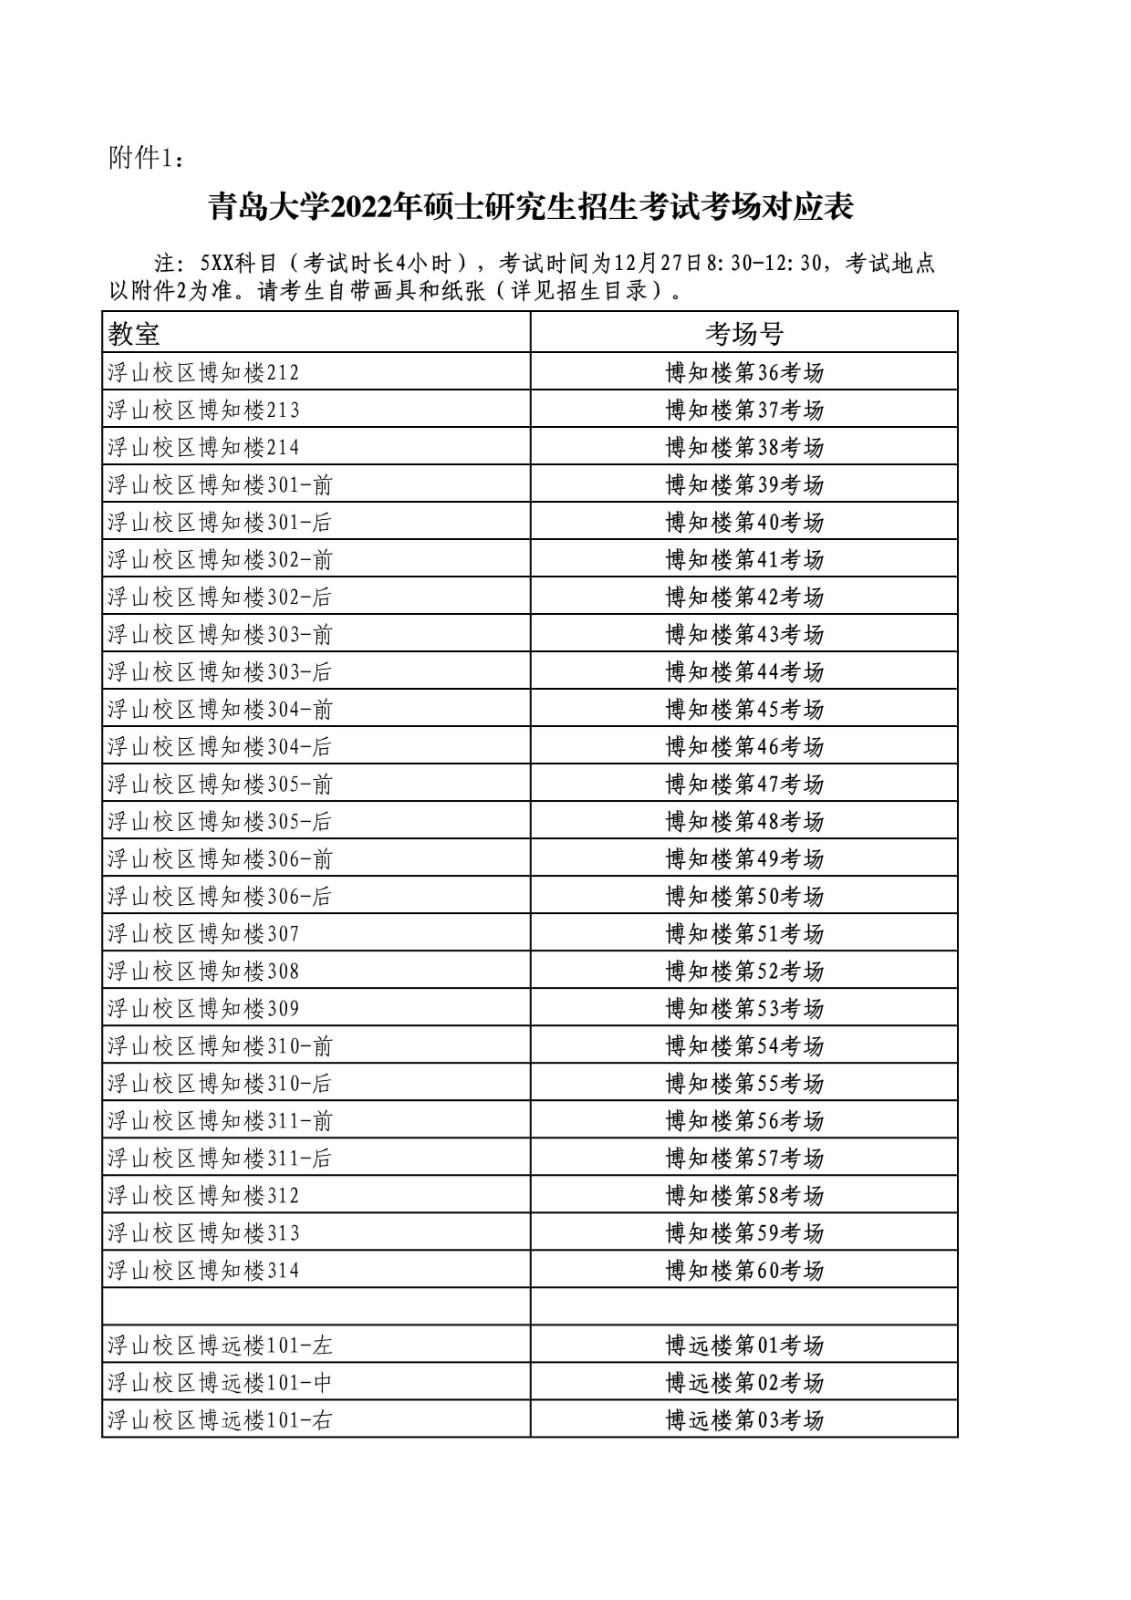 2022年全國碩士研究生招生考試(初試)青島大學考點公告(含考場安排)